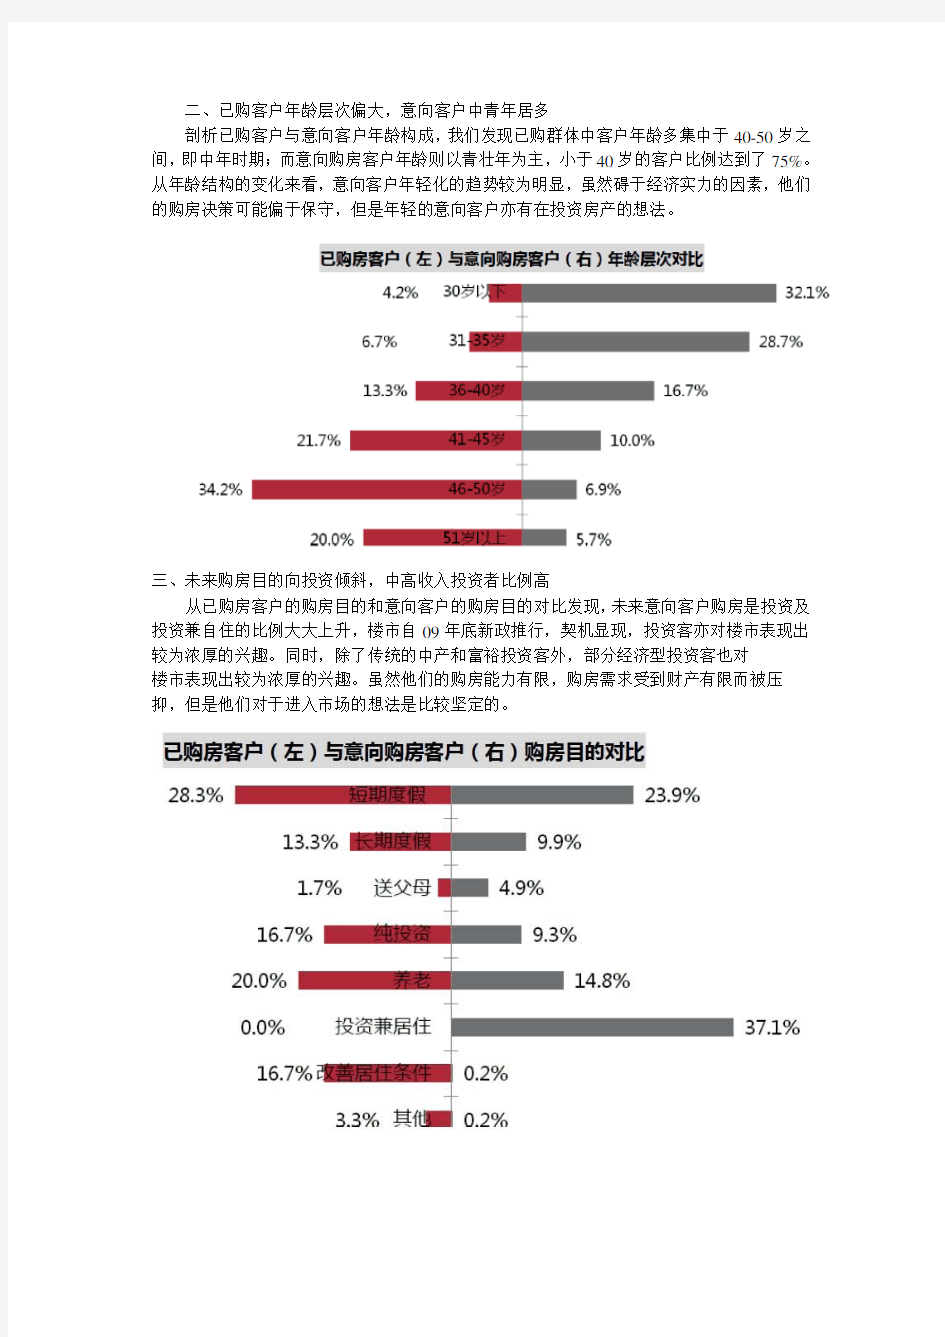 海南房地产客户群体分析-中文文字版